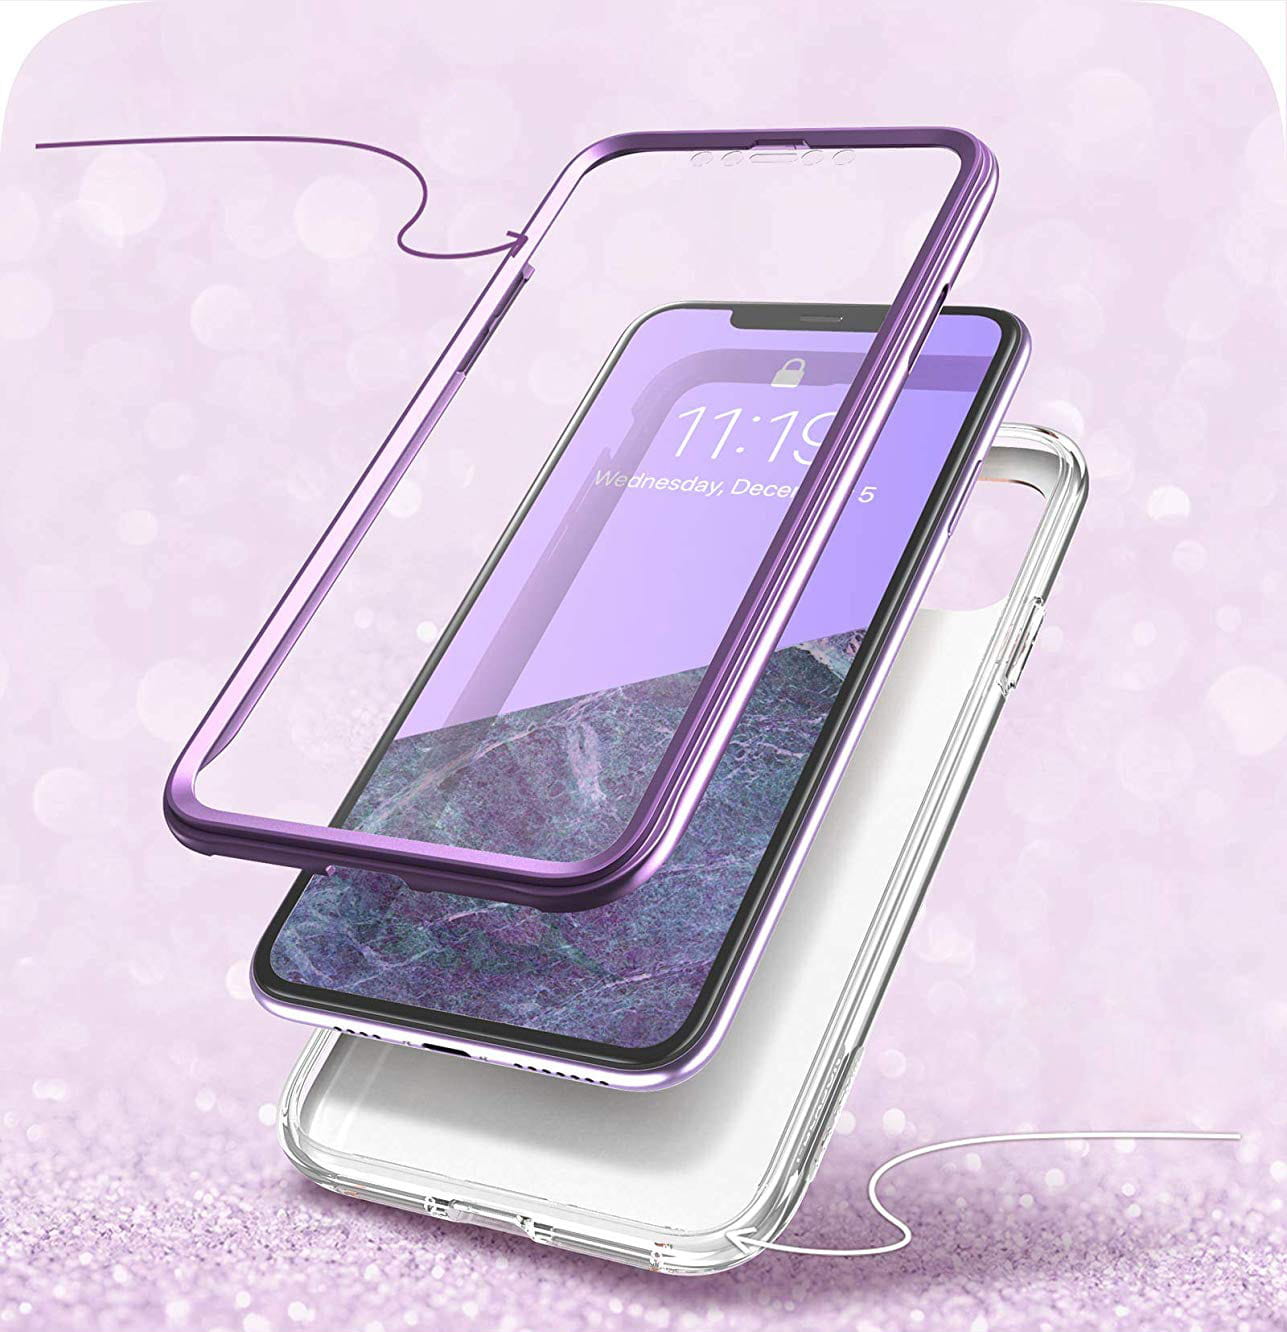 Gepanzerte Schutzhülle mit eingebautem Displayschutz Supcase i-Blason Cosmo für iPhone 11 violett.